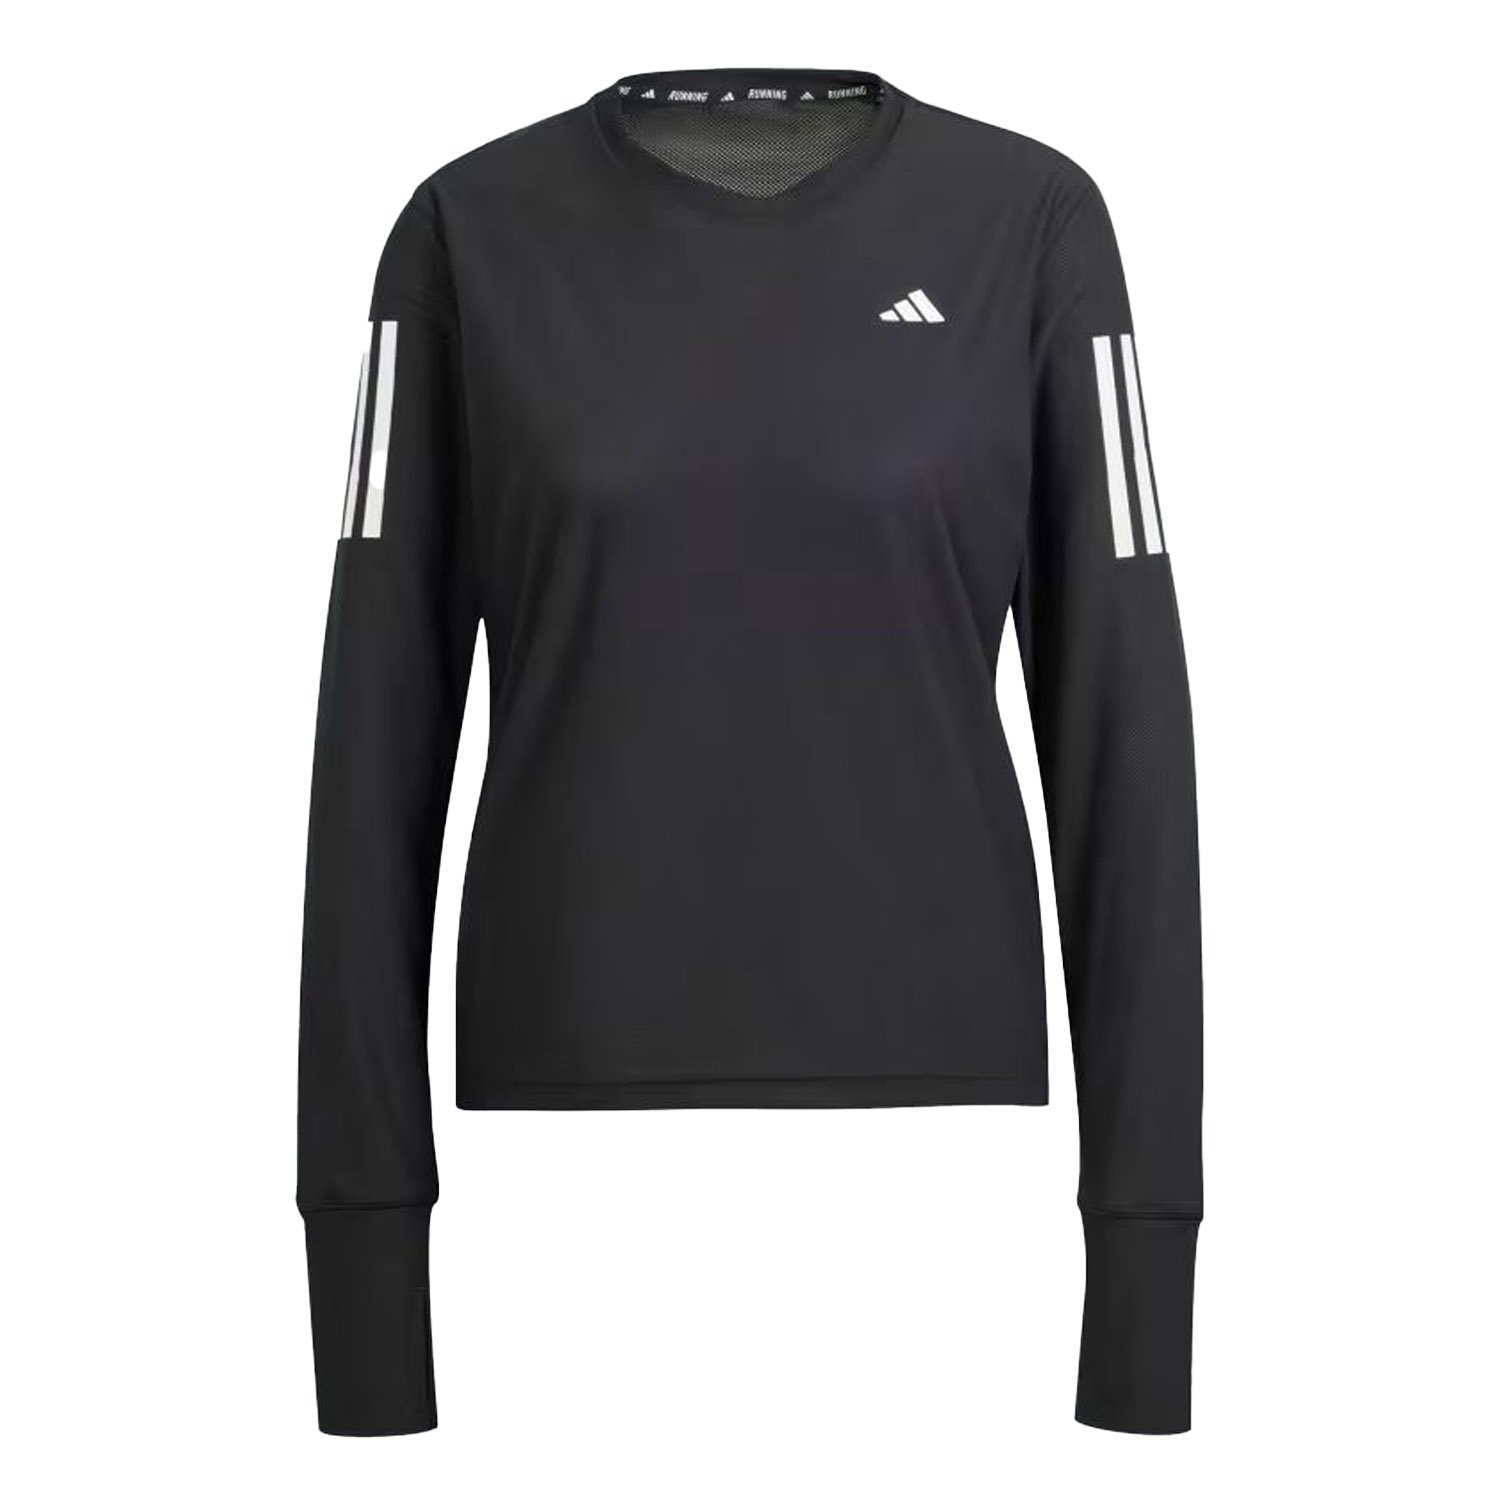 Adidas Otr B LS Kadın Koşu Tişörtü - Siyah - 1